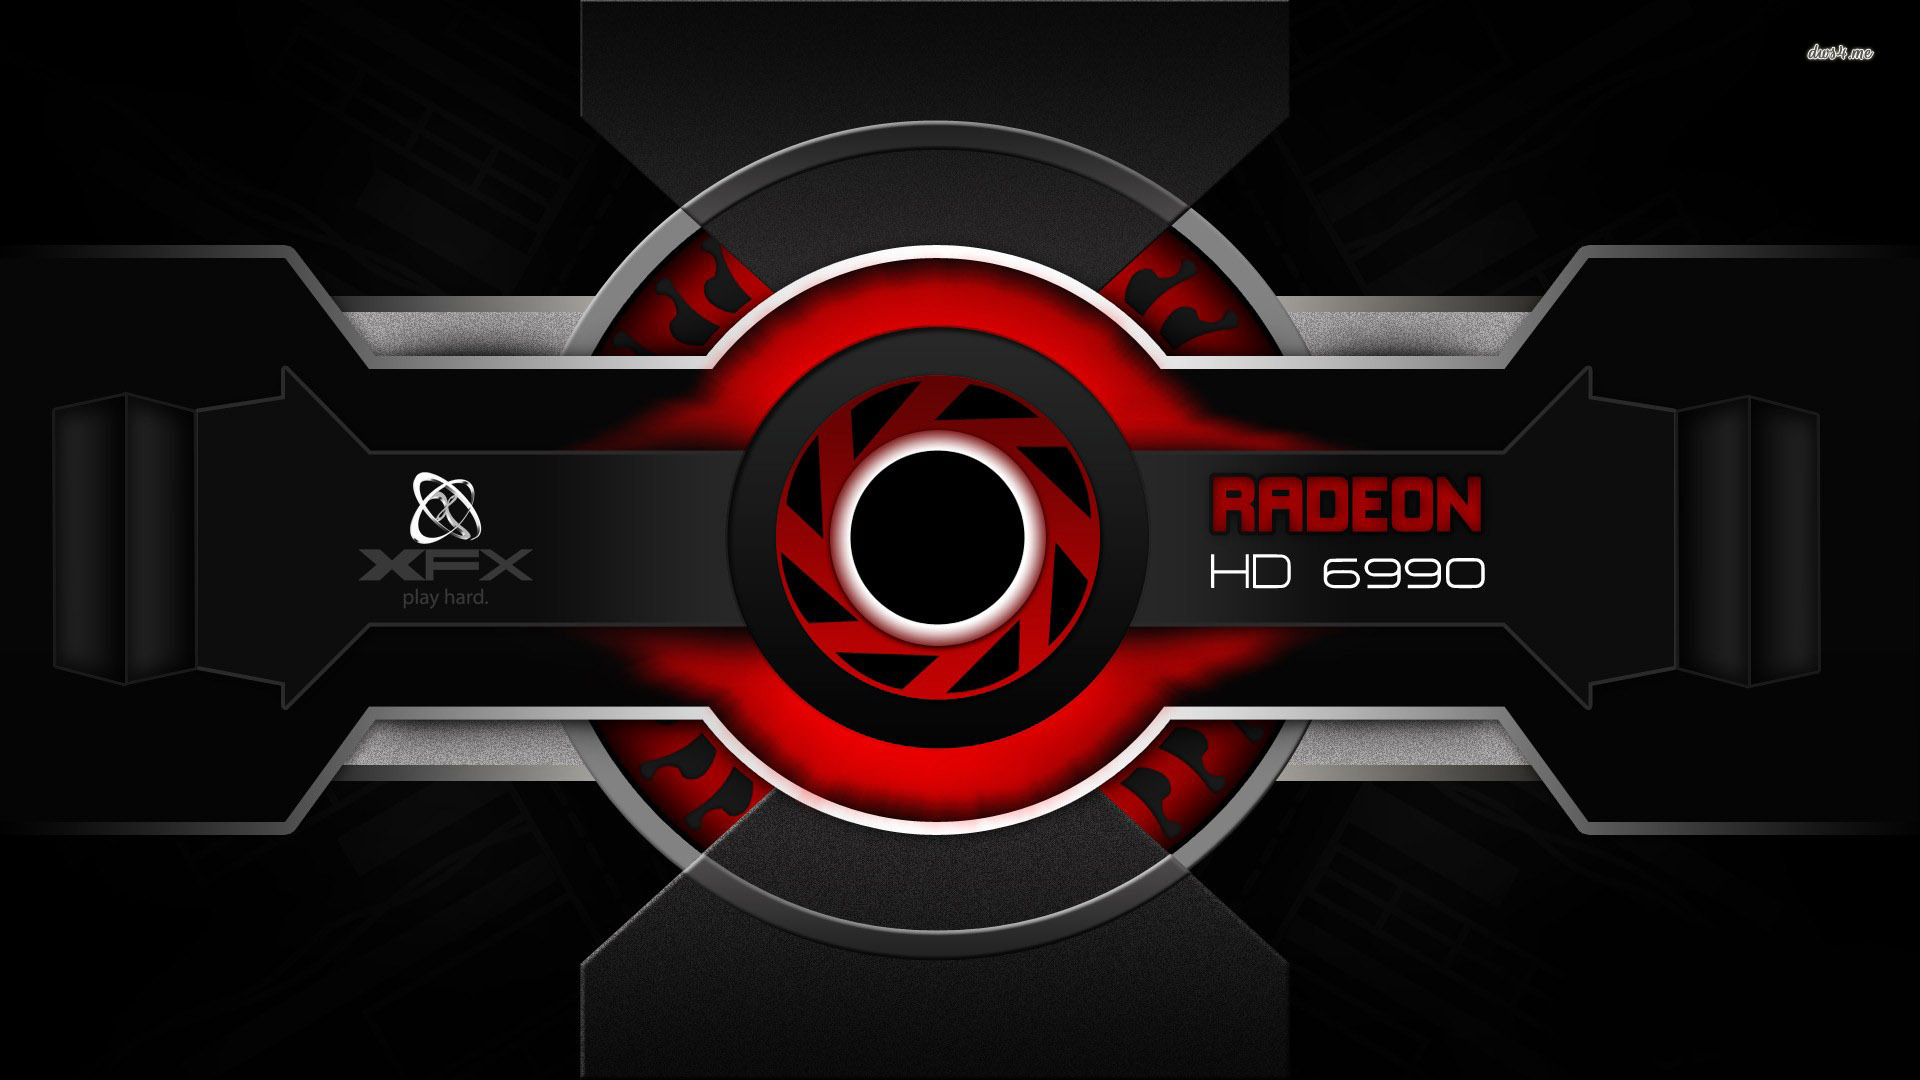 AMD Radeon on X: 